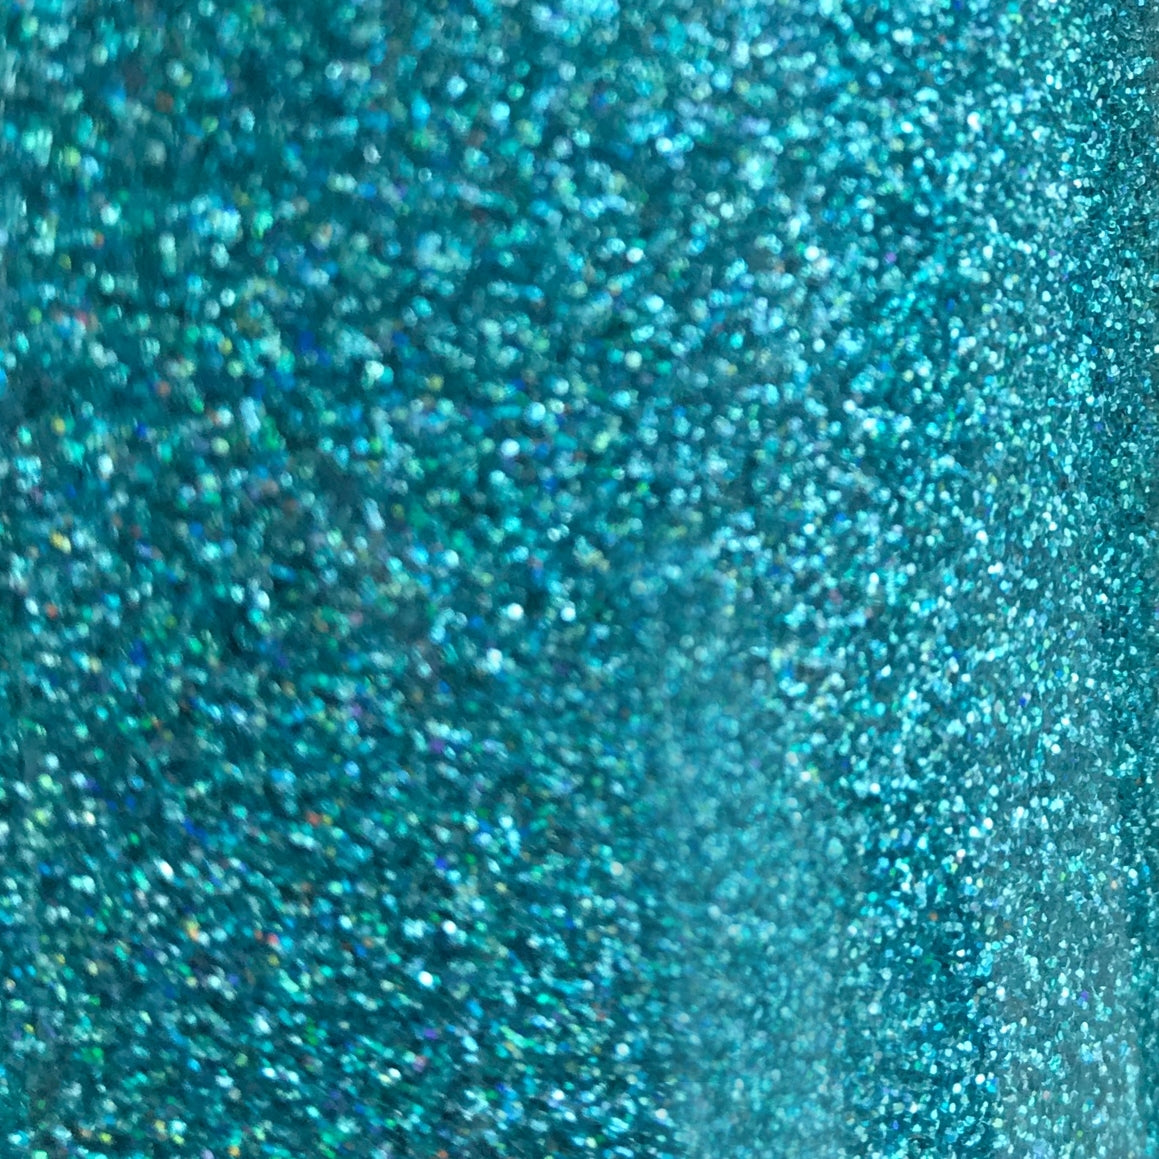 Mermaid Blue Glitter Heat Transfer Vinyl – MyVinylCircle